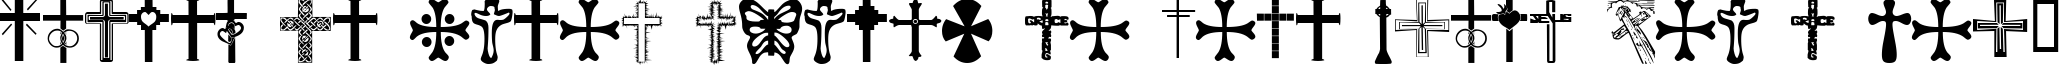 Пример написания шрифтом Christian Crosses текста на французском